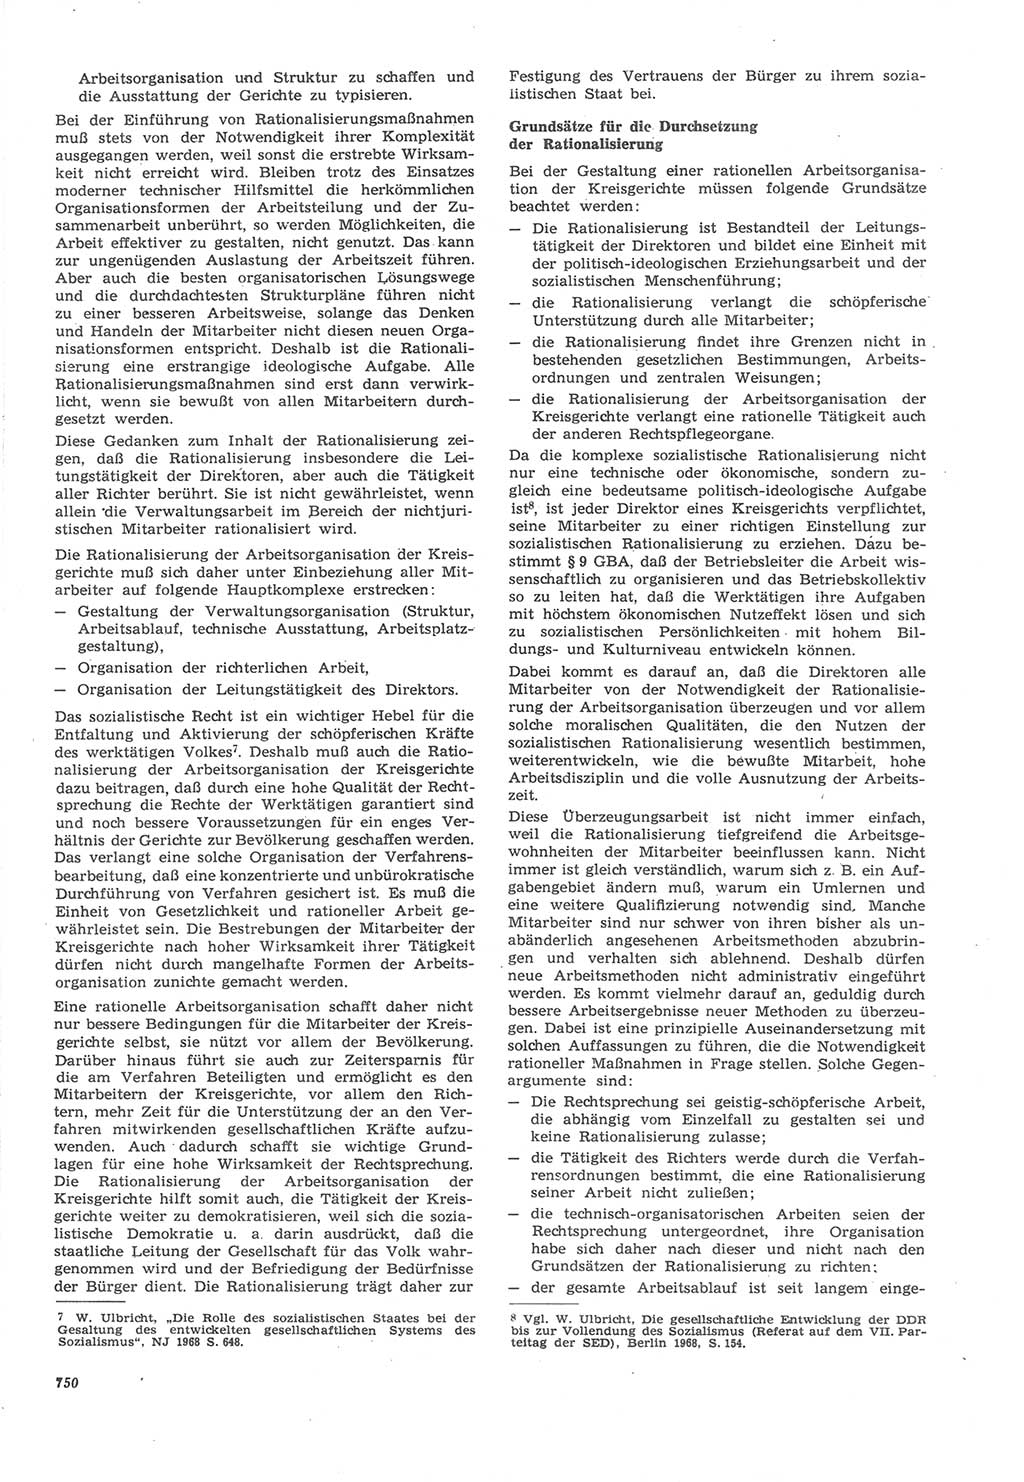 Neue Justiz (NJ), Zeitschrift für Recht und Rechtswissenschaft [Deutsche Demokratische Republik (DDR)], 22. Jahrgang 1968, Seite 750 (NJ DDR 1968, S. 750)